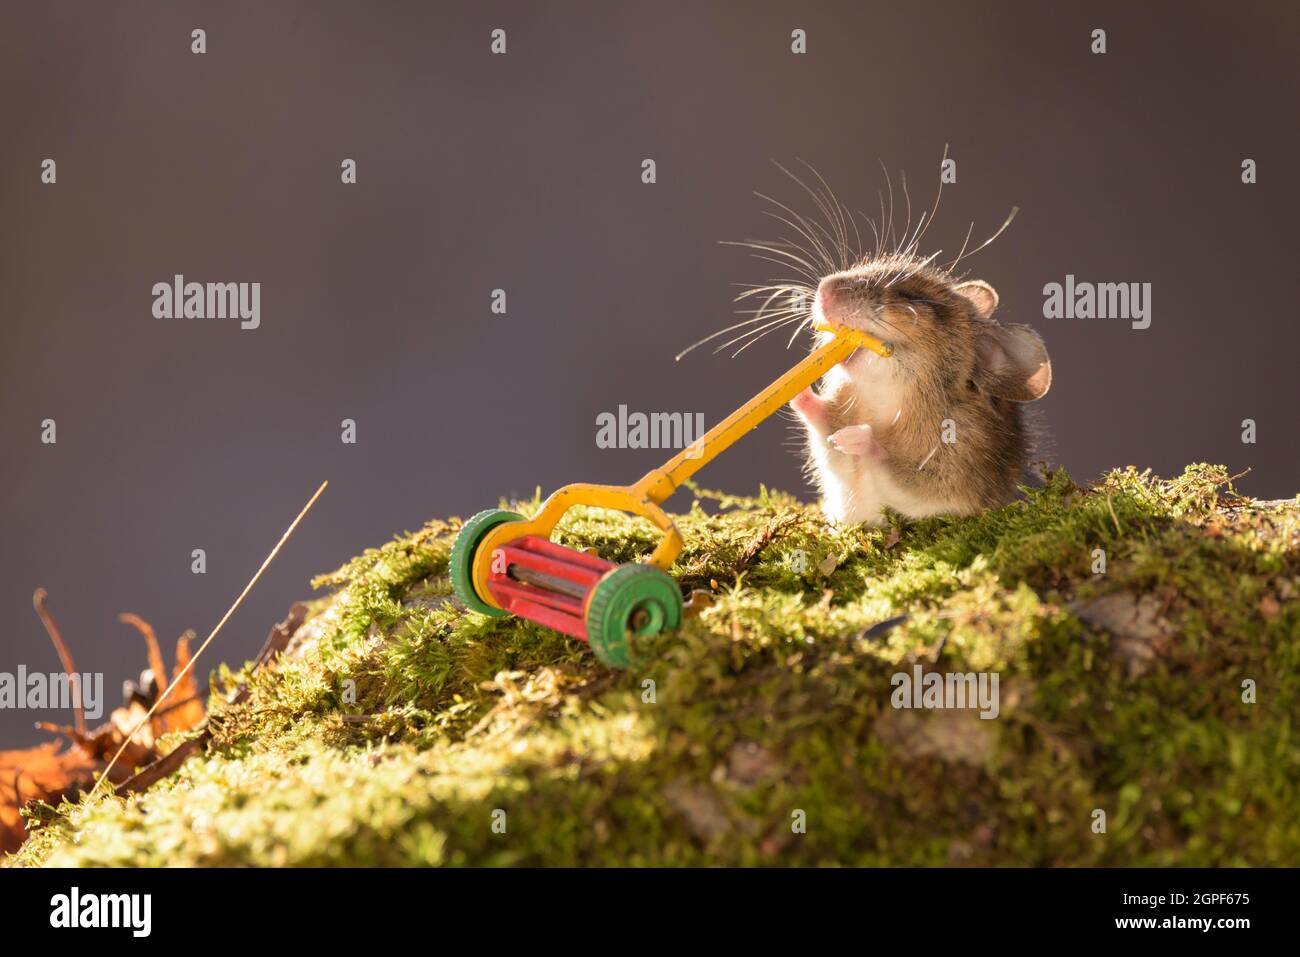 Kleine maus im gras -Fotos und -Bildmaterial in hoher Auflösung – Alamy